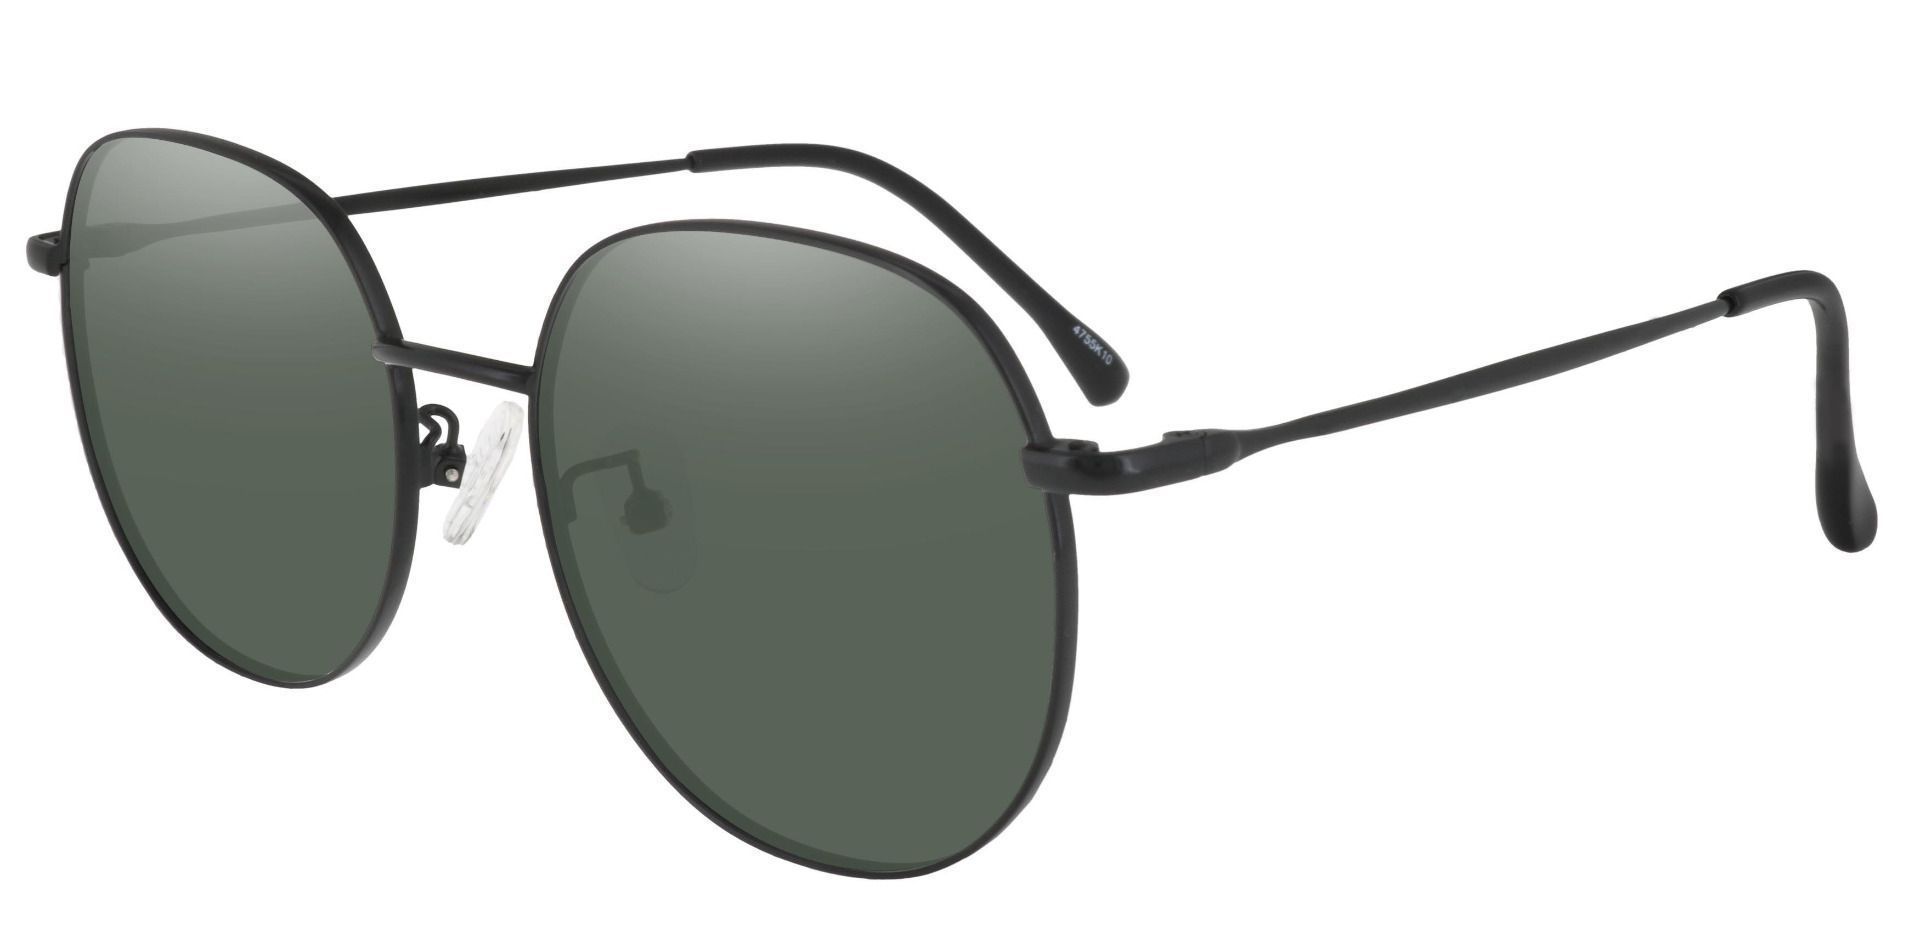 Holden Oval Prescription Sunglasses - Black Frame With Green Lenses ...